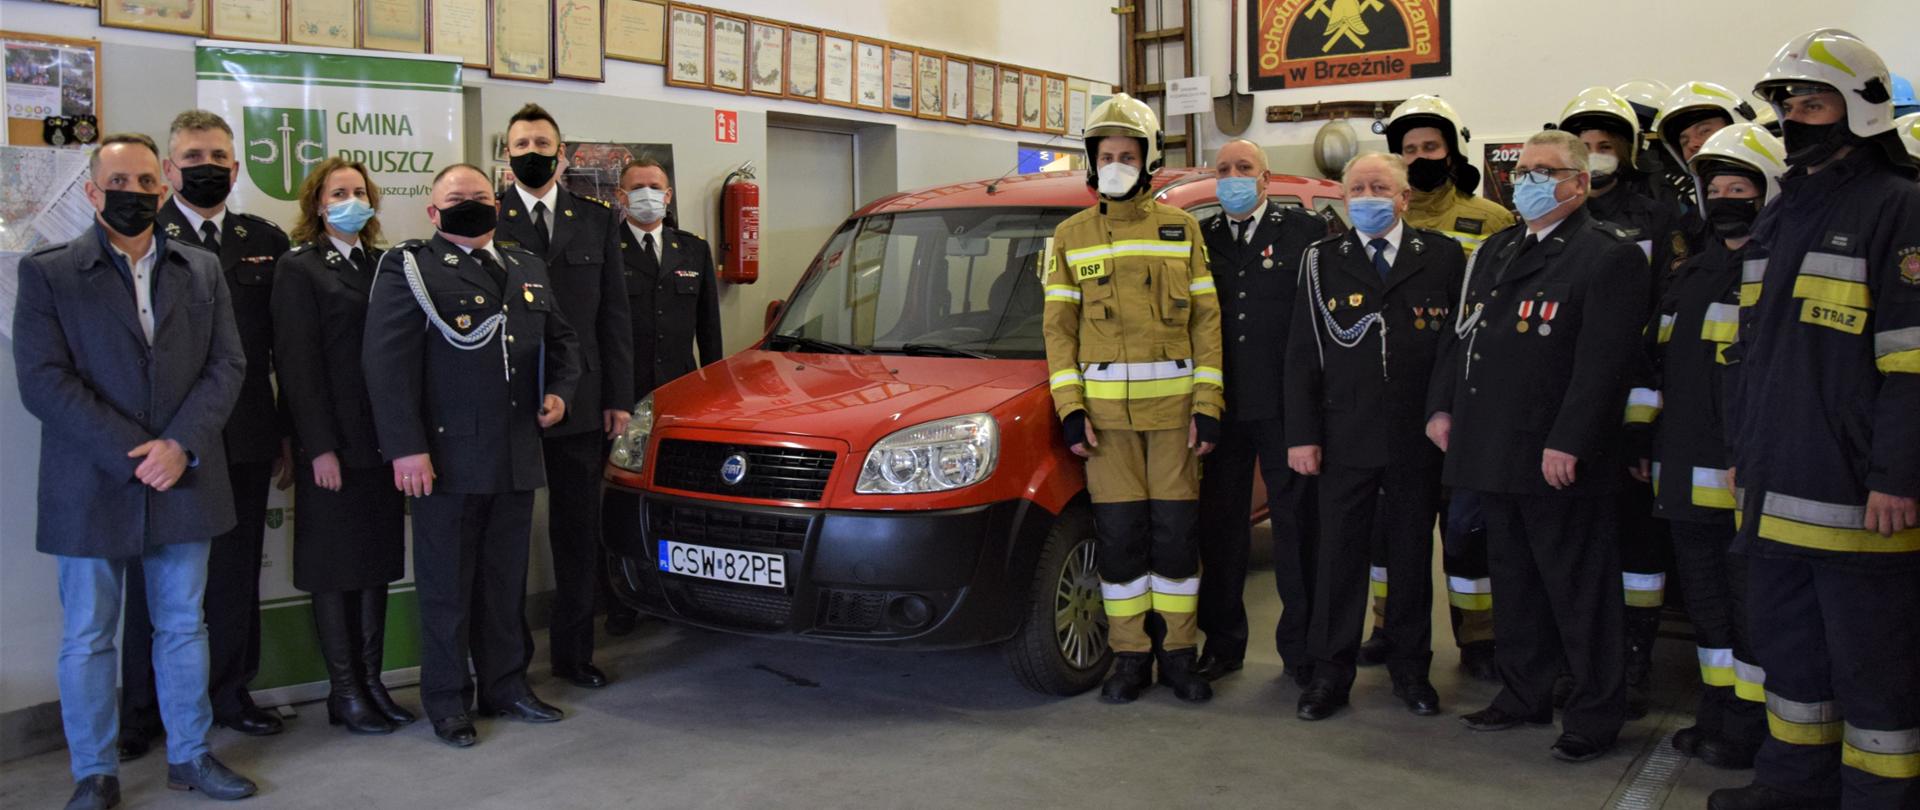 Wewnątrz garażu Ochotniczej Straży Pożarnej w Brzeźnie na środku widać przód od lewej strony samochodu strażackiego Fiat Doblo po prawej stronie samochodu stoi pięciu strażaków w mundurach wyjściowych oraz jeden cywil. Po lewej trzech strażaków w mundurach wyjściowych oraz ośmiu w mundurach specjalnych w hełmach. 